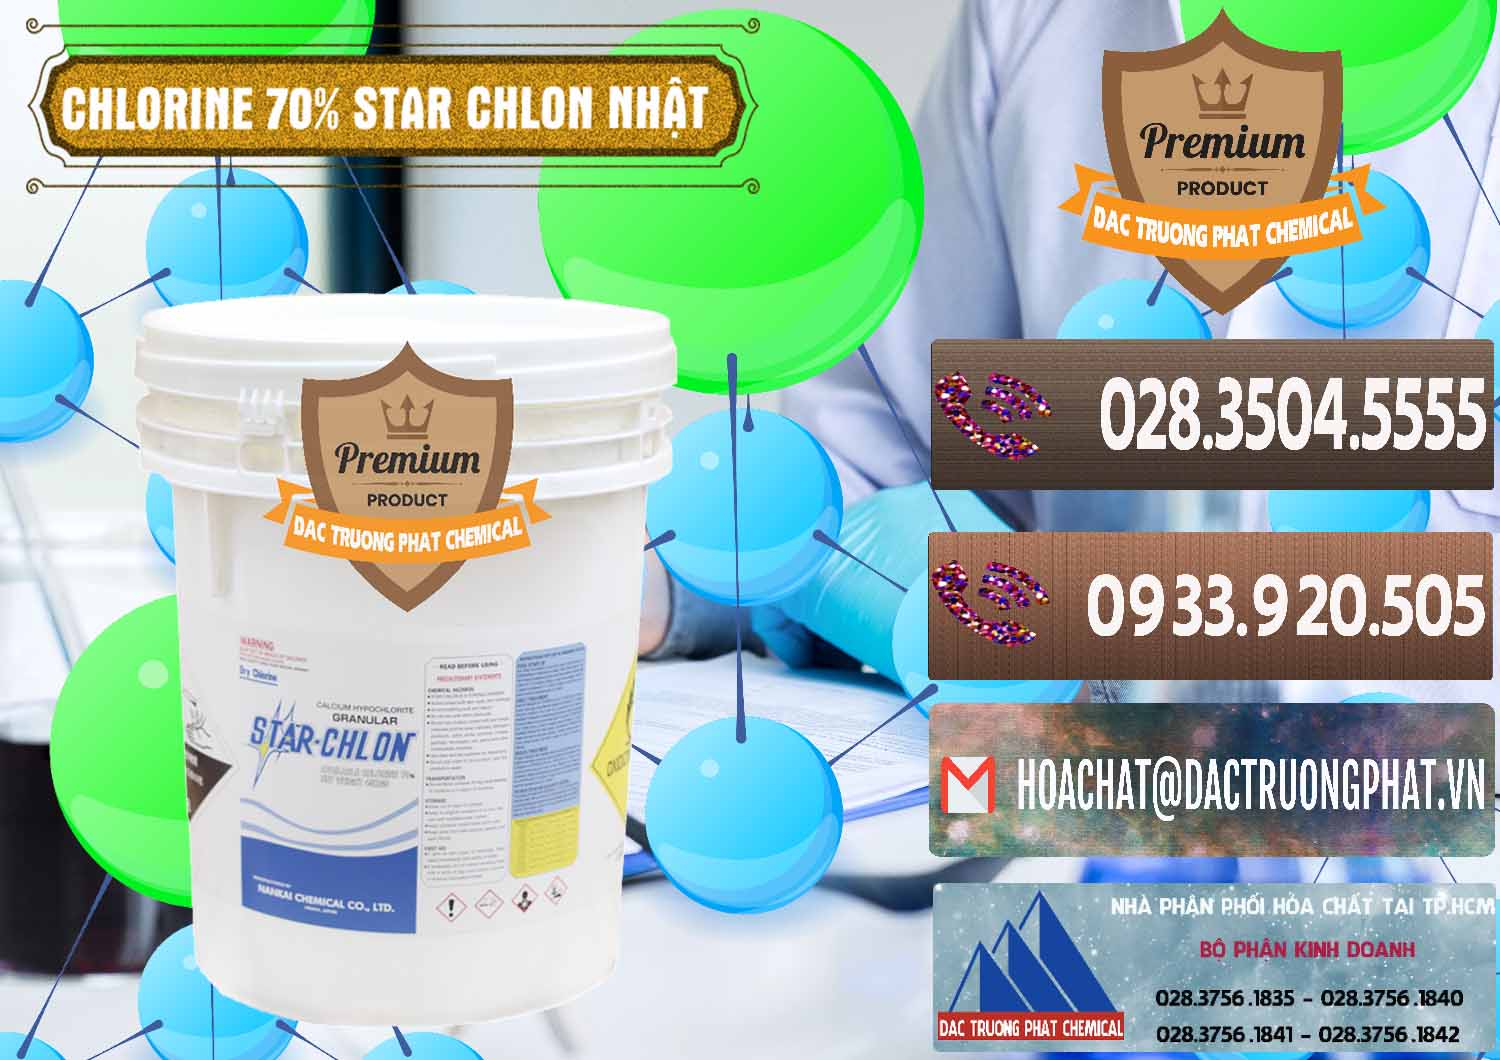 Nơi chuyên cung cấp _ bán Clorin – Chlorine 70% Star Chlon Nhật Bản Japan - 0243 - Công ty chuyên kinh doanh _ cung cấp hóa chất tại TP.HCM - hoachatviet.net